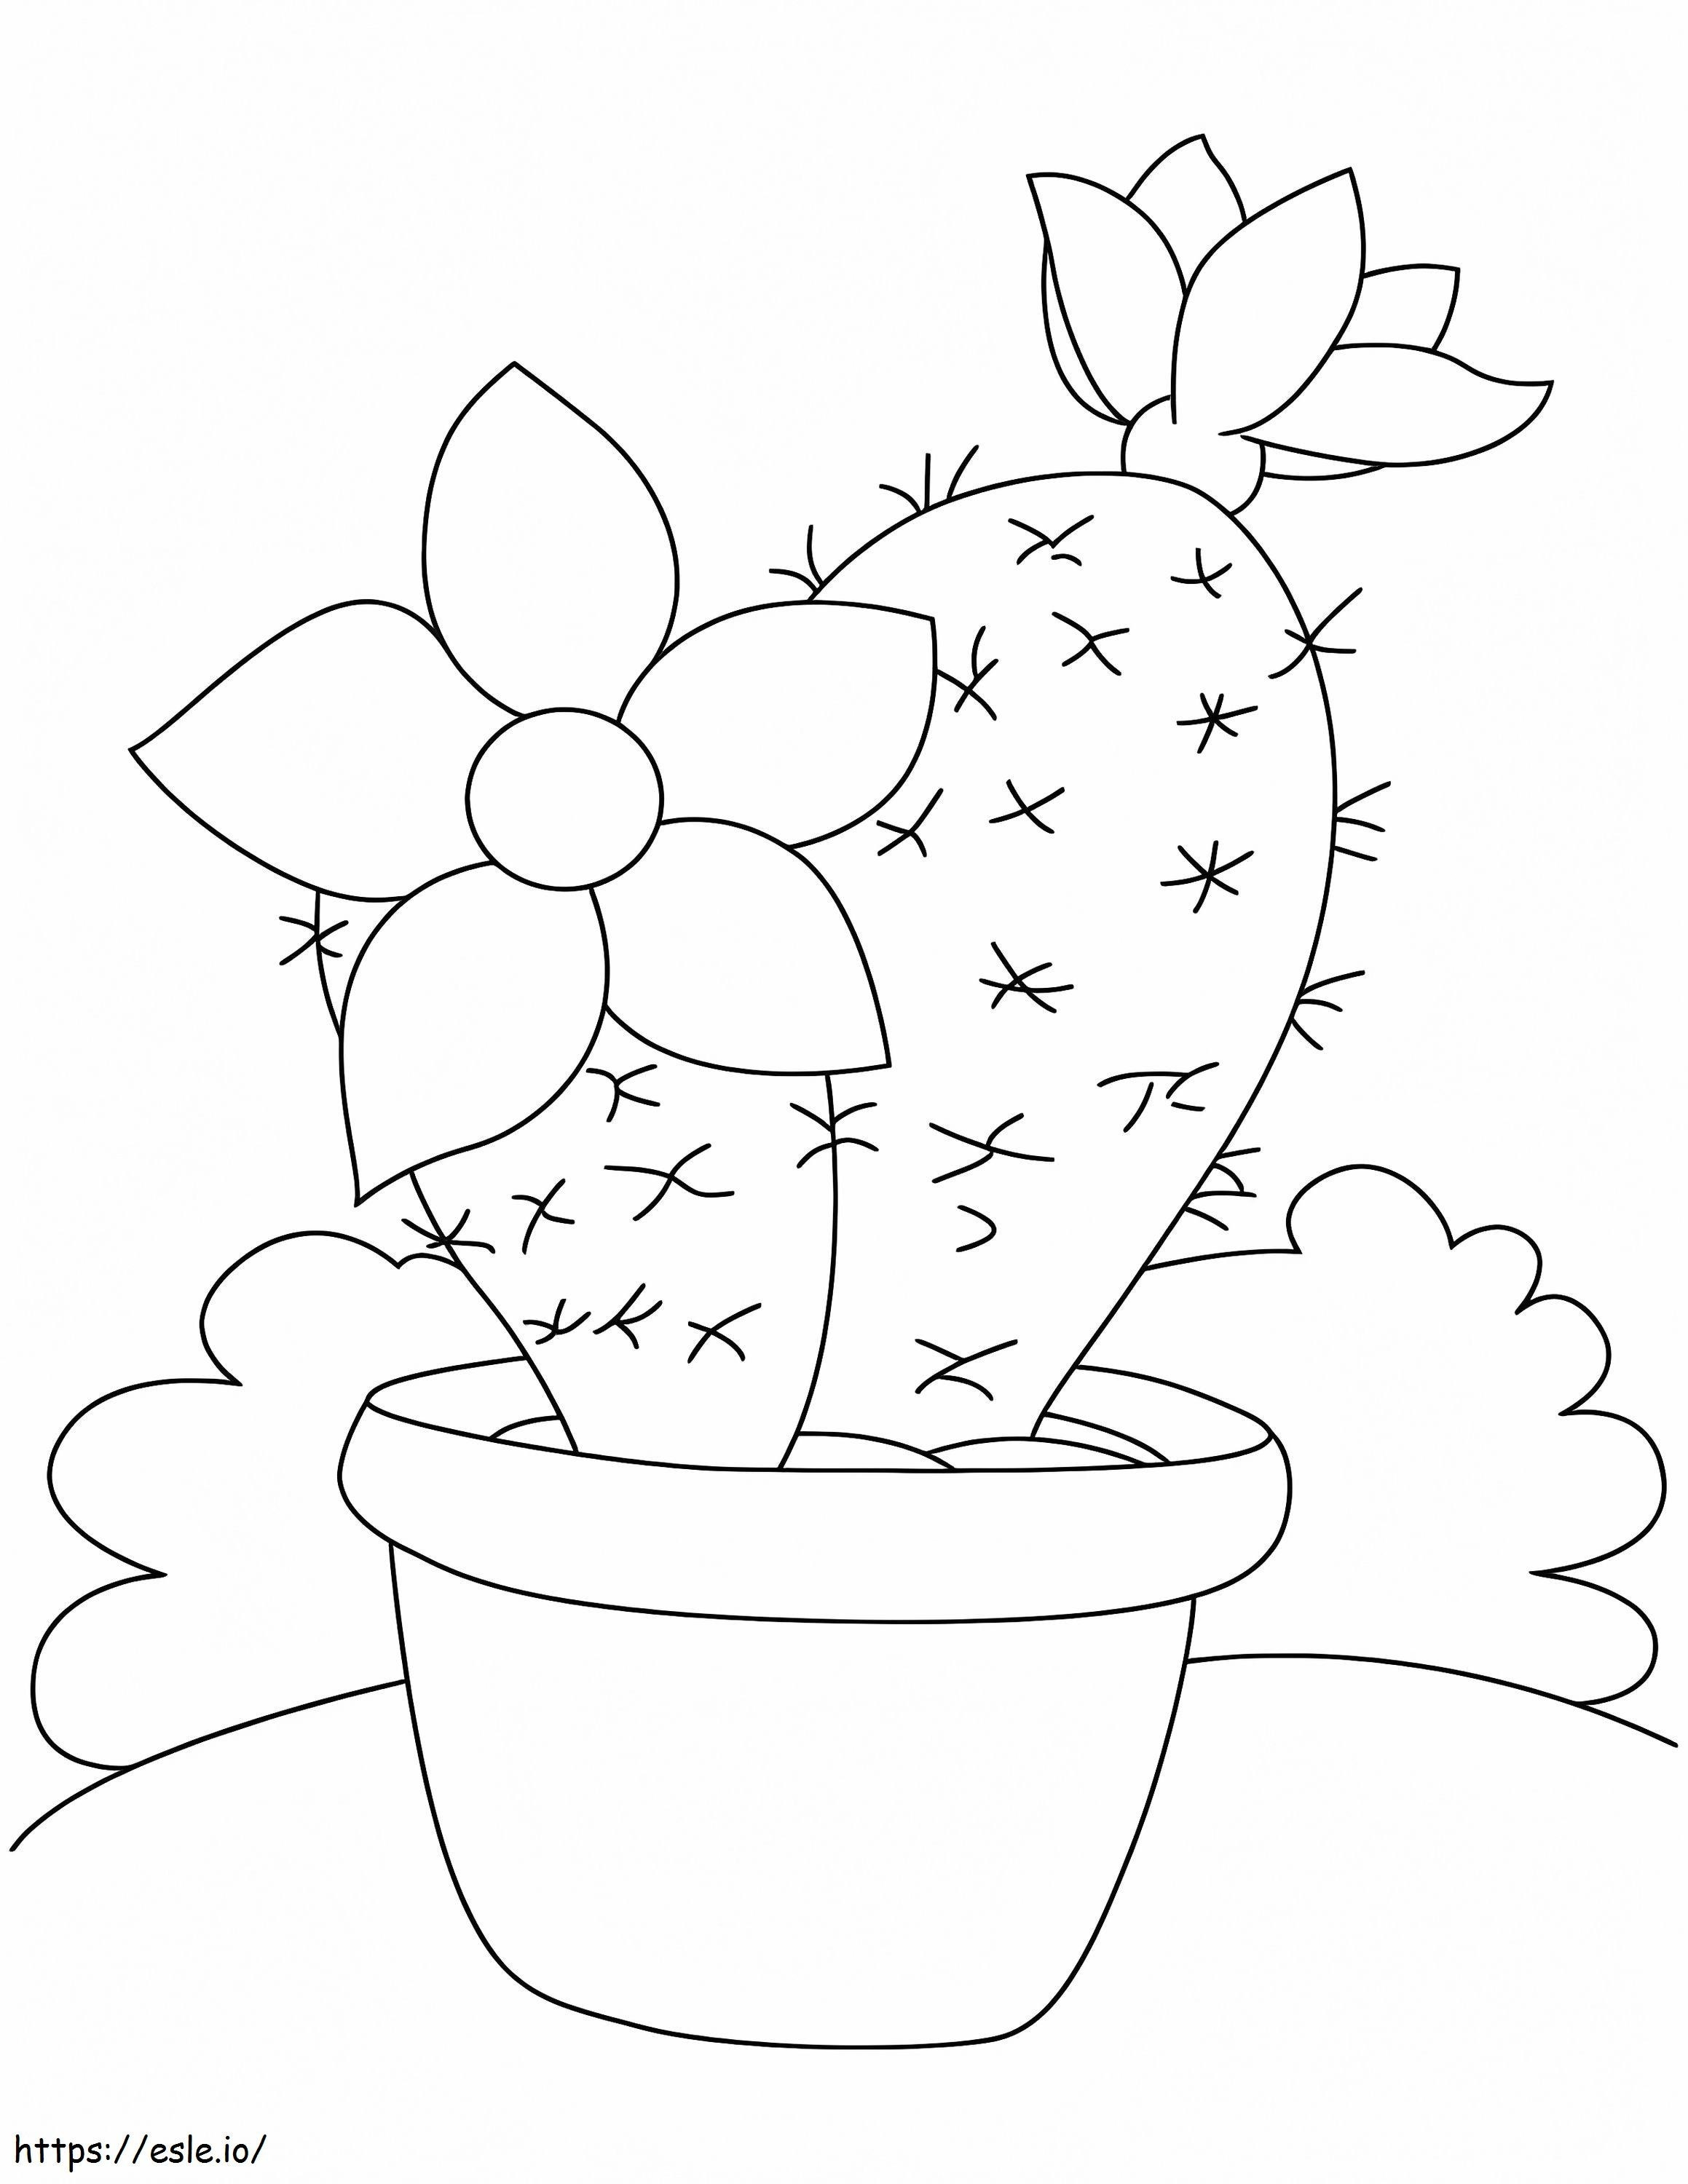 Buon cactus in vaso da colorare